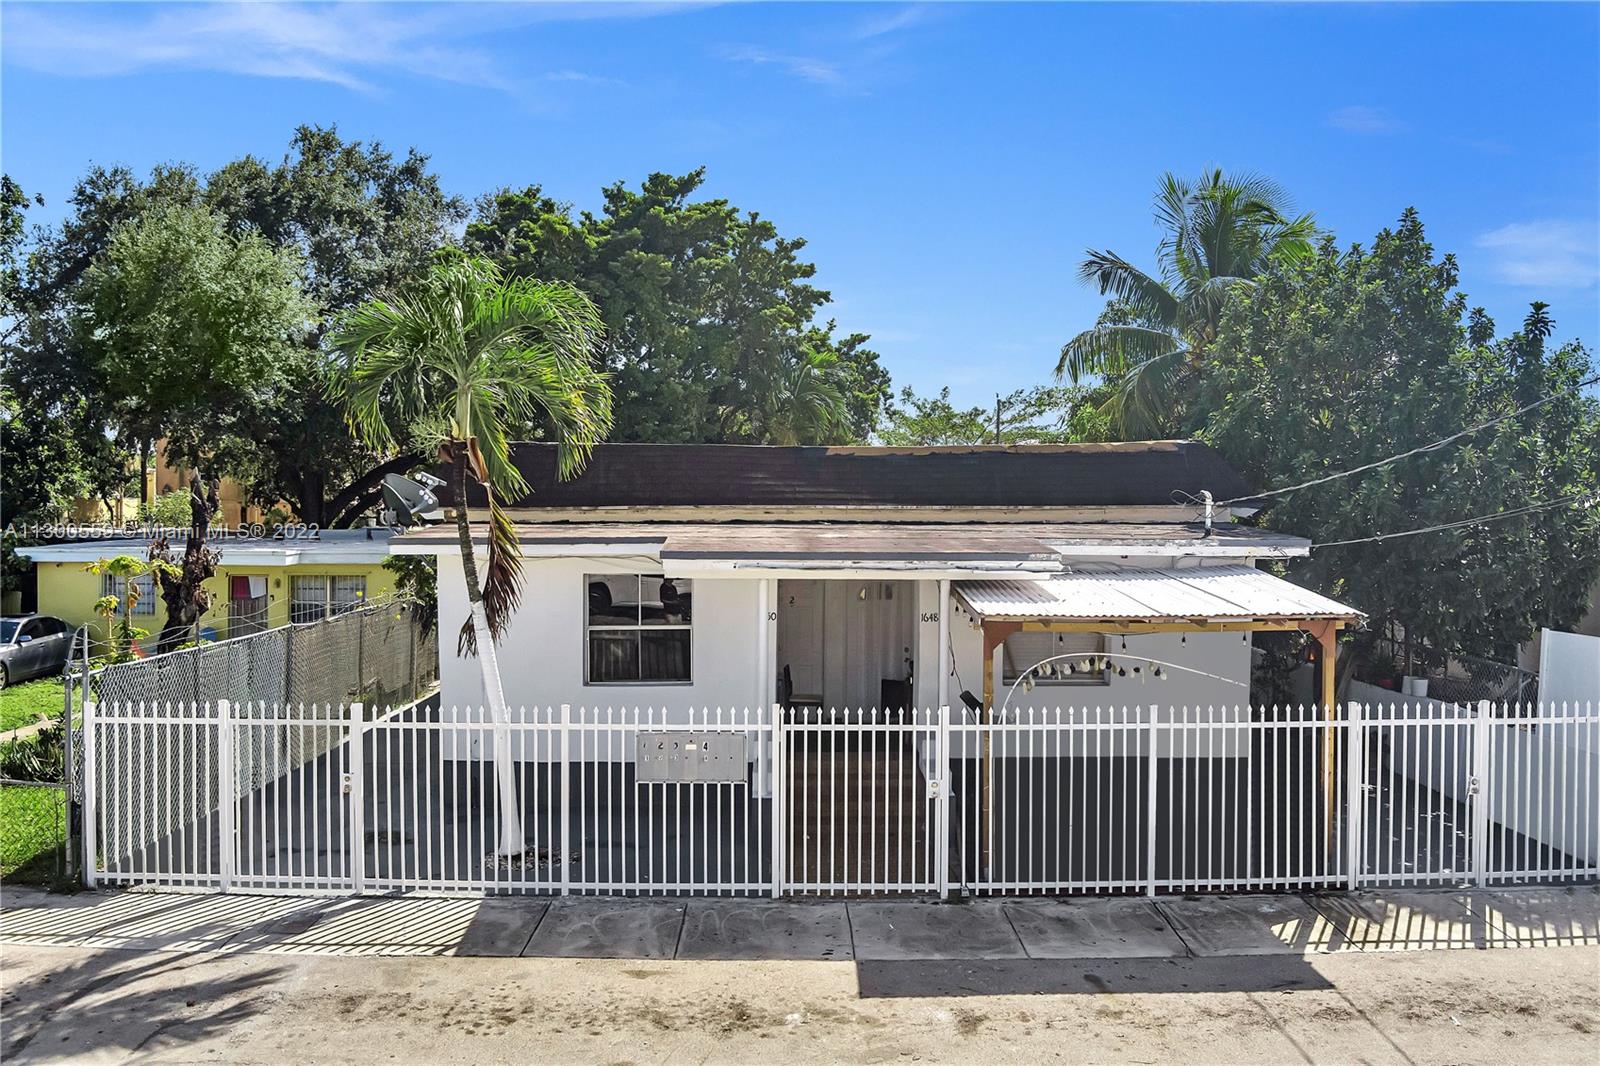 Rental Property at 1648 Nw 33rd St, Miami, Broward County, Florida -  - $699,000 MO.